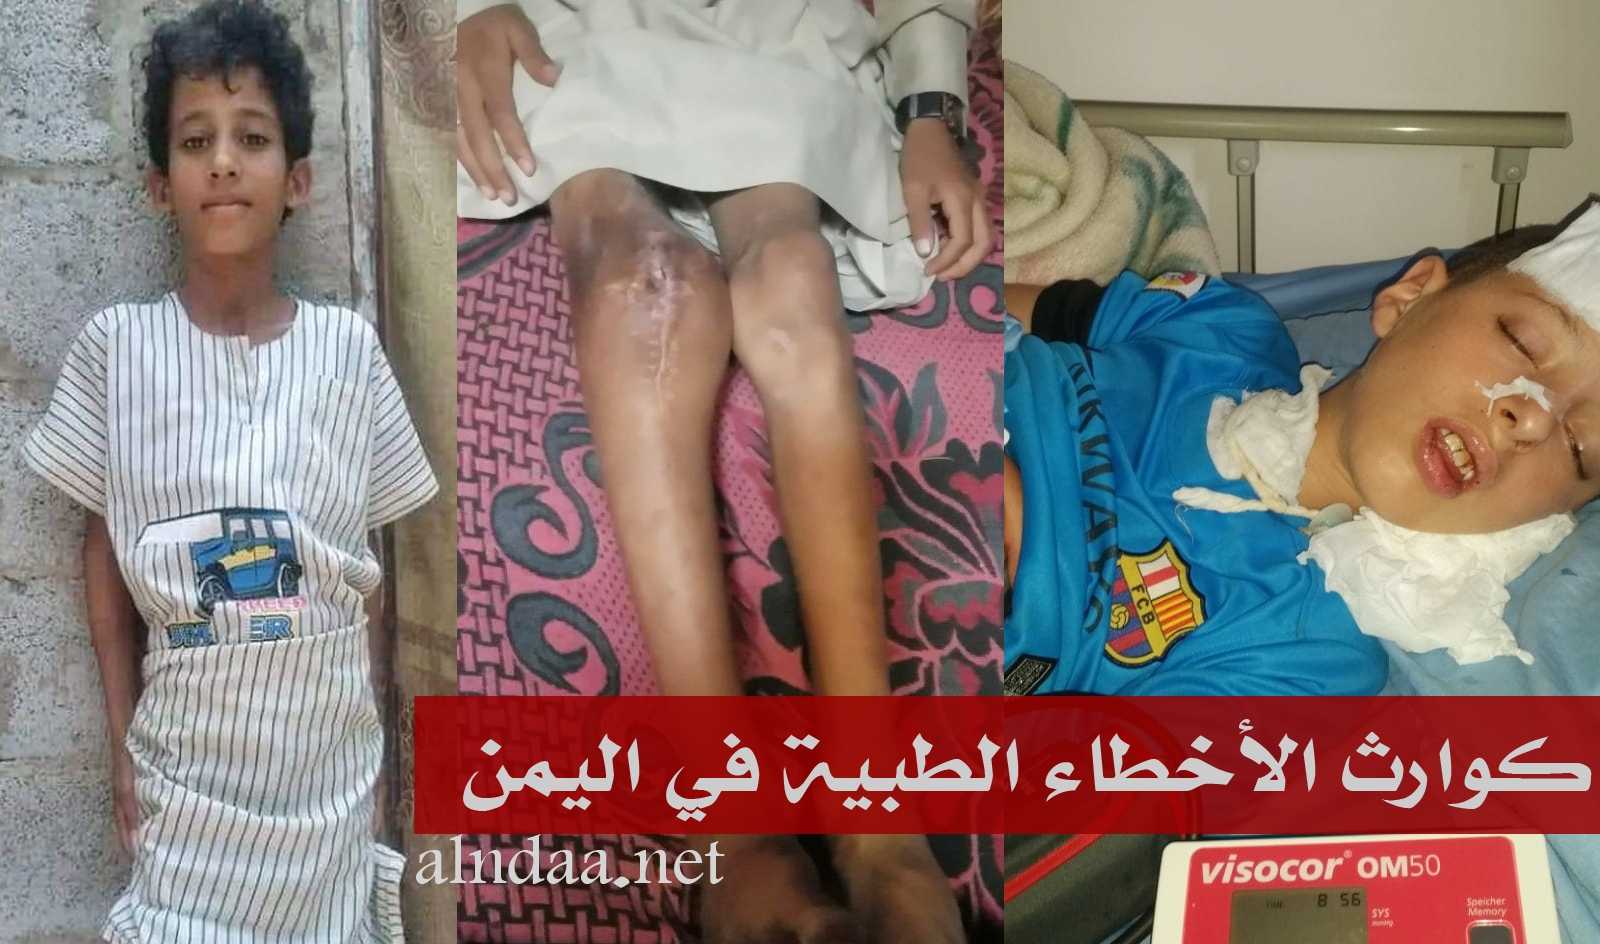 كوارث الأخطاء الطبية في اليمن - الطفلان المقالح والقطوي شاهدان